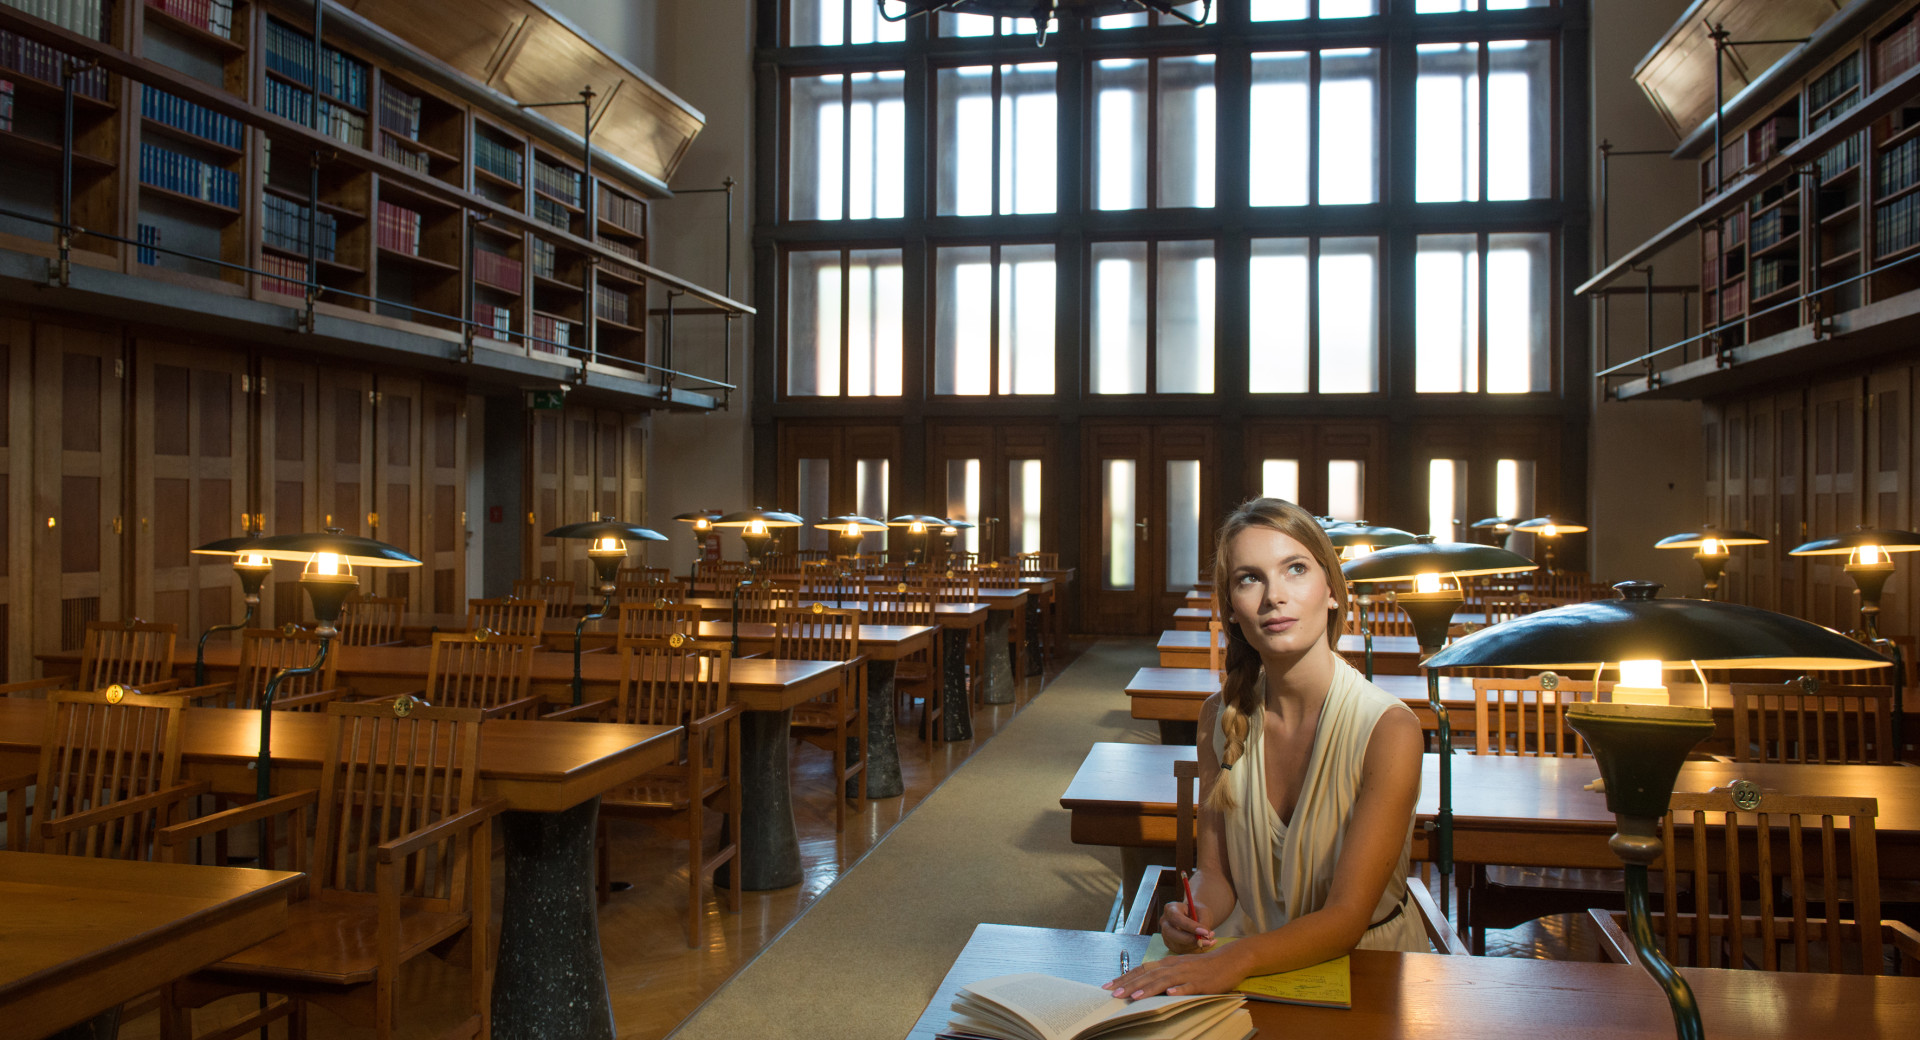 Notranjost narodne in univerzitetne knjižnice. V ospredju dekle s knjigo.